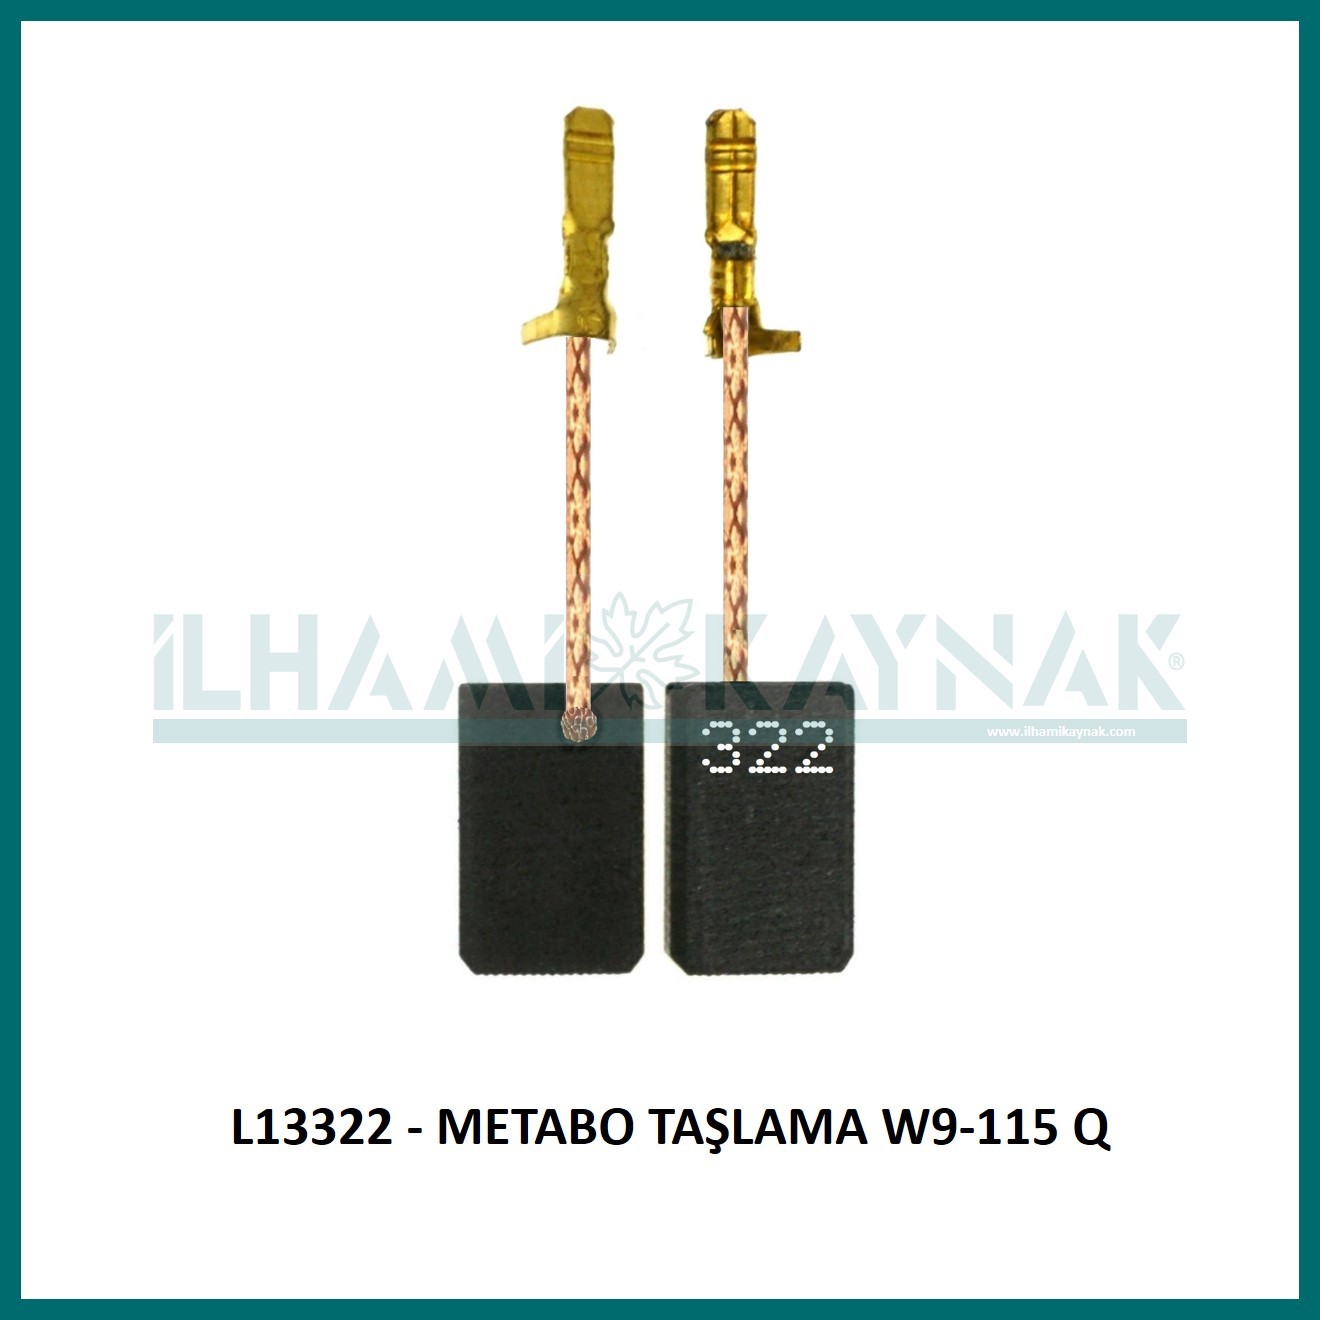 L13322 - METABO TAŞLAMA W9-115 Q - 5*10*17 mm - 100 Adet